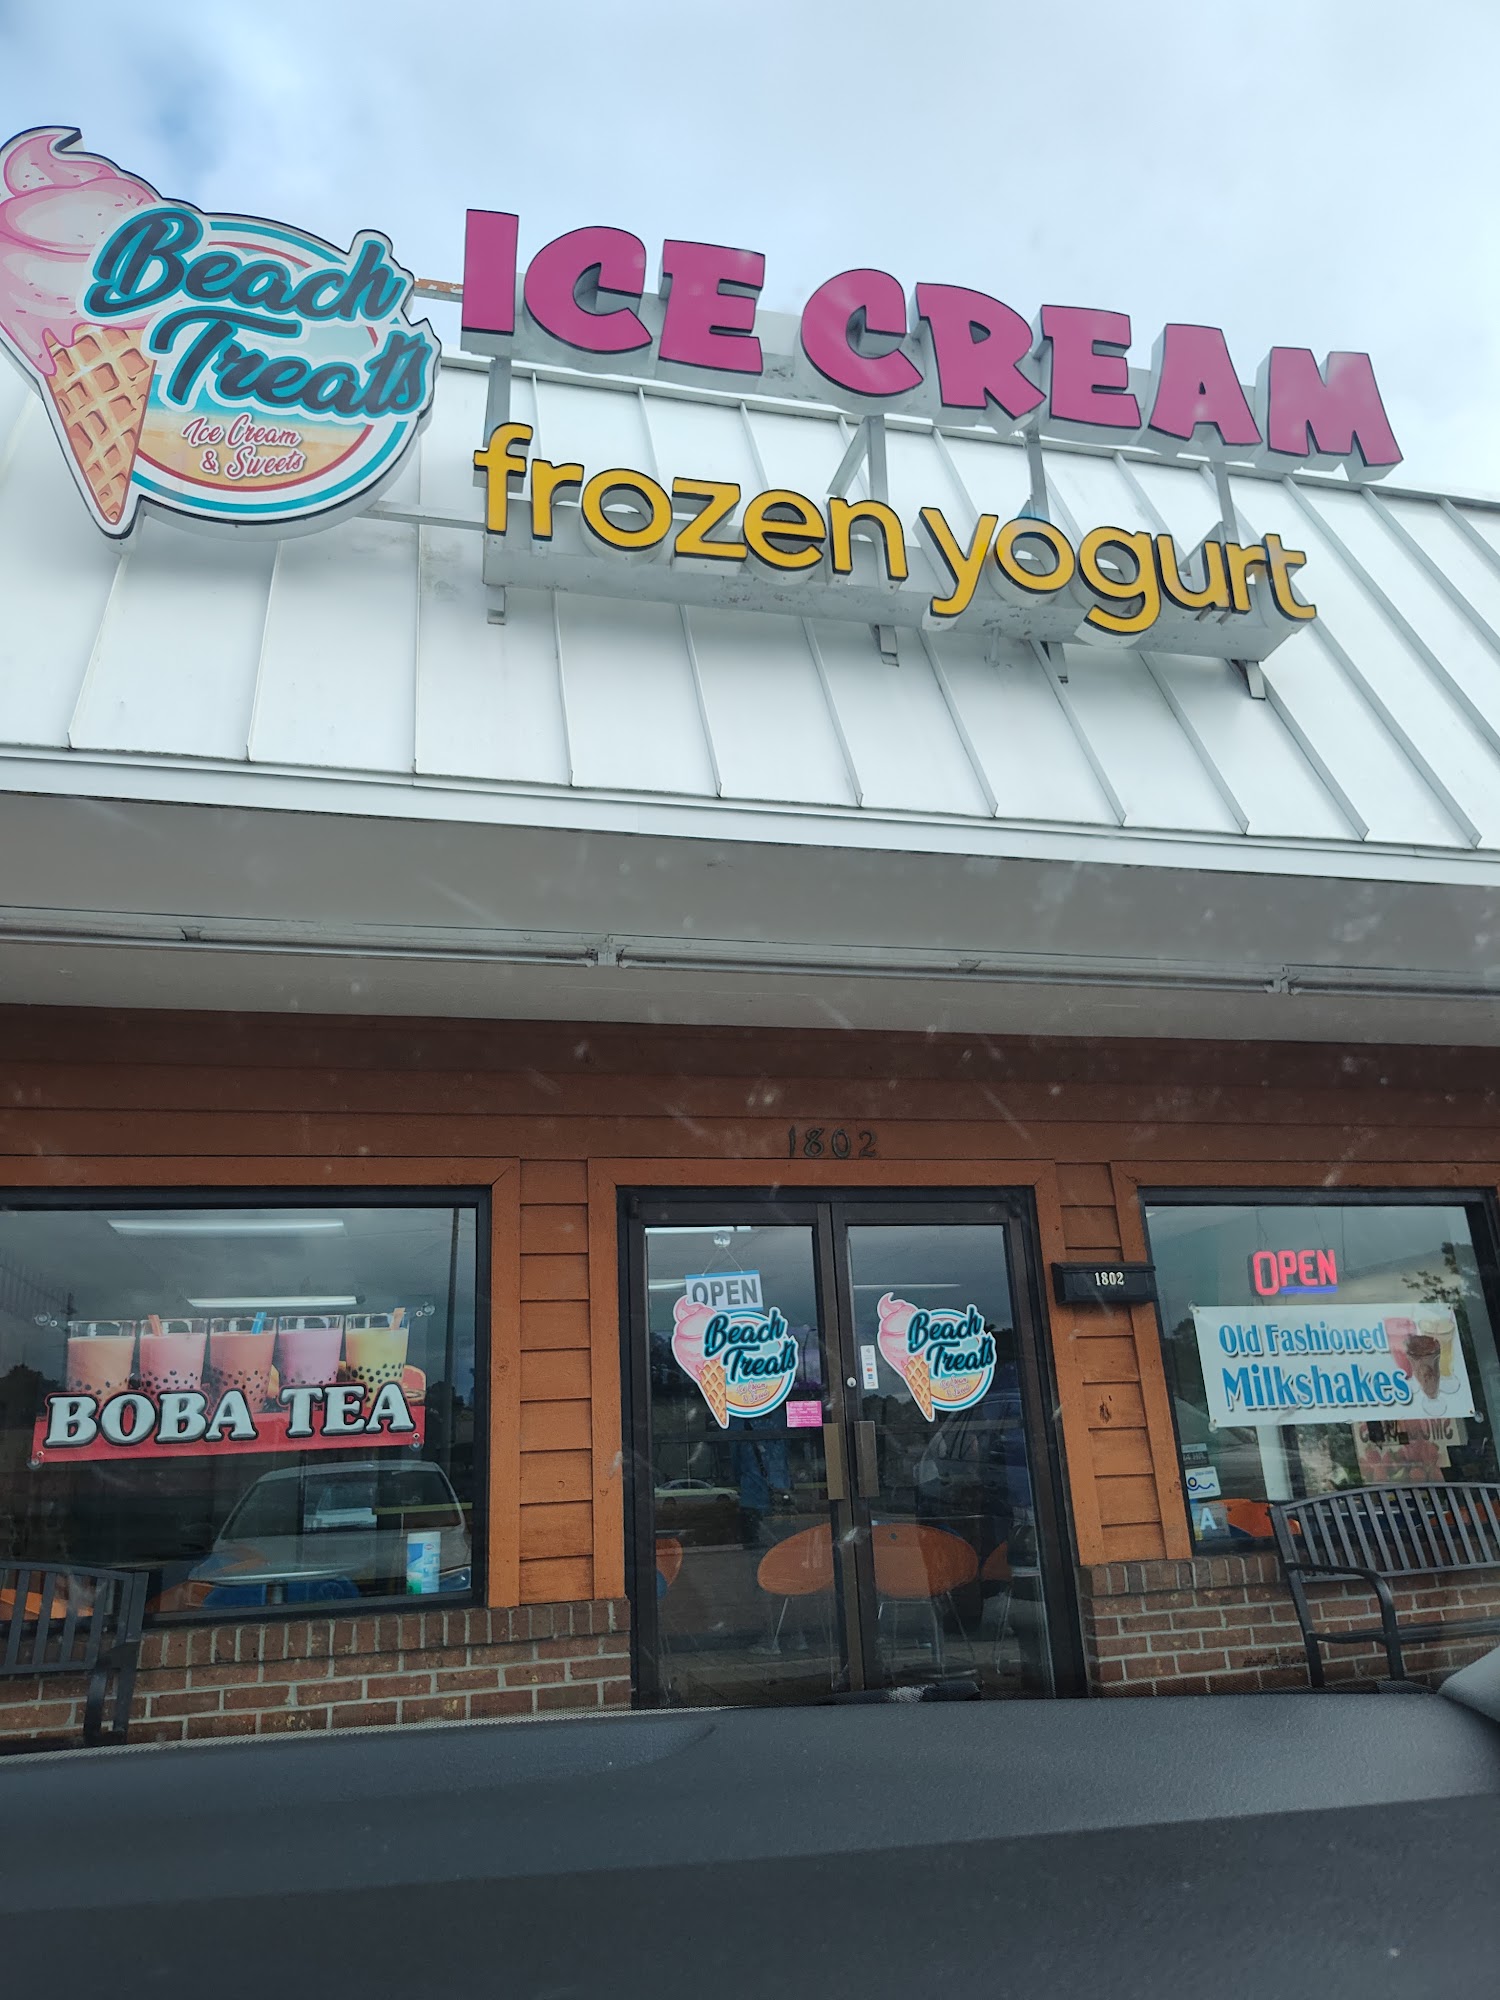 Beach Treats Ice Cream and Frozen Yogurt